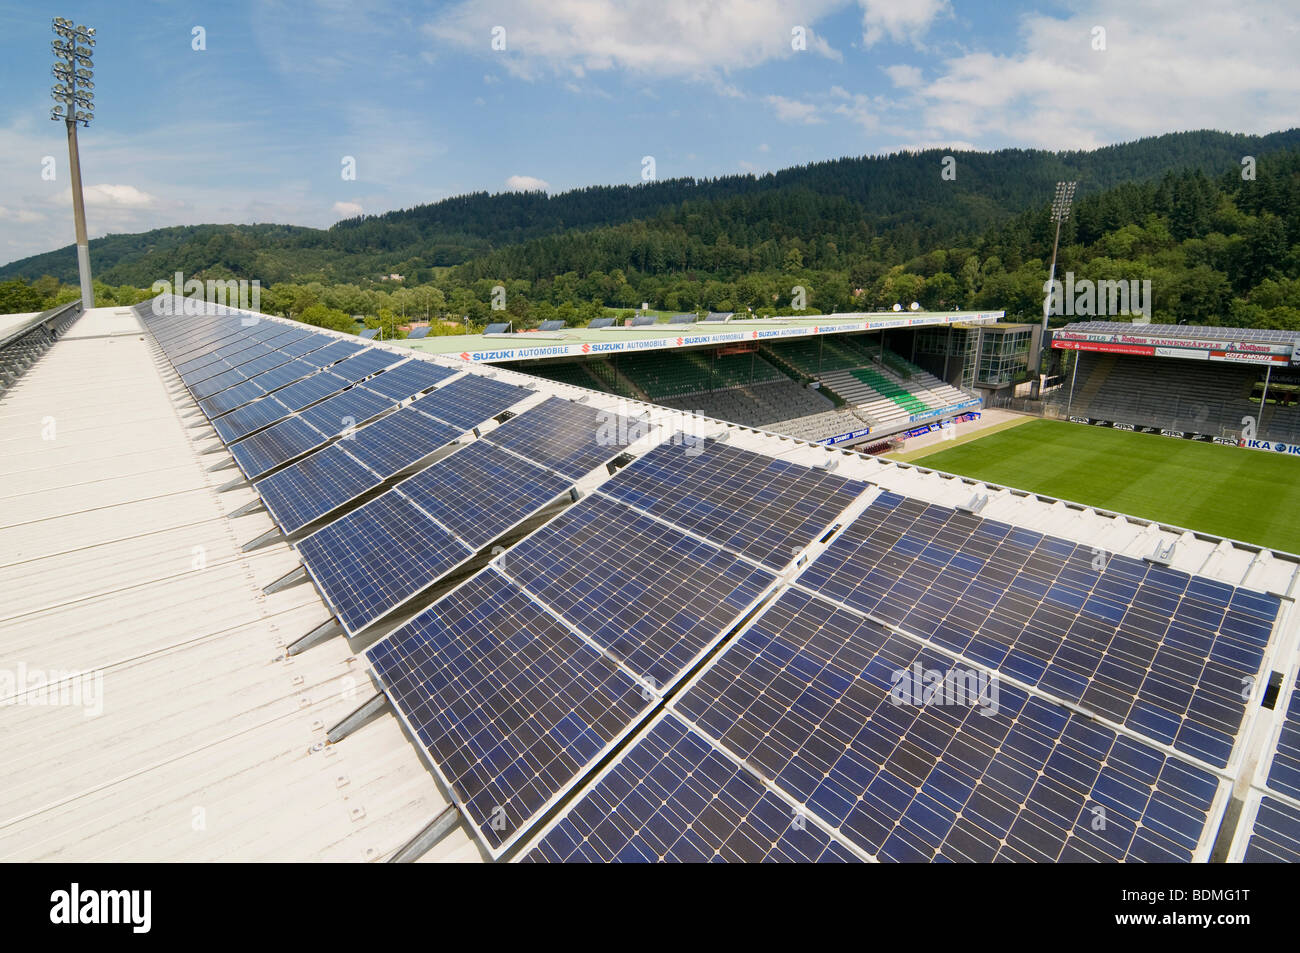 Solaranlage auf dem Dach des Stadions von SC Freiburg Fußball Team, Freiburg Im Breisgau, Baden-Württemberg, Deutschland, Europa Stockfoto